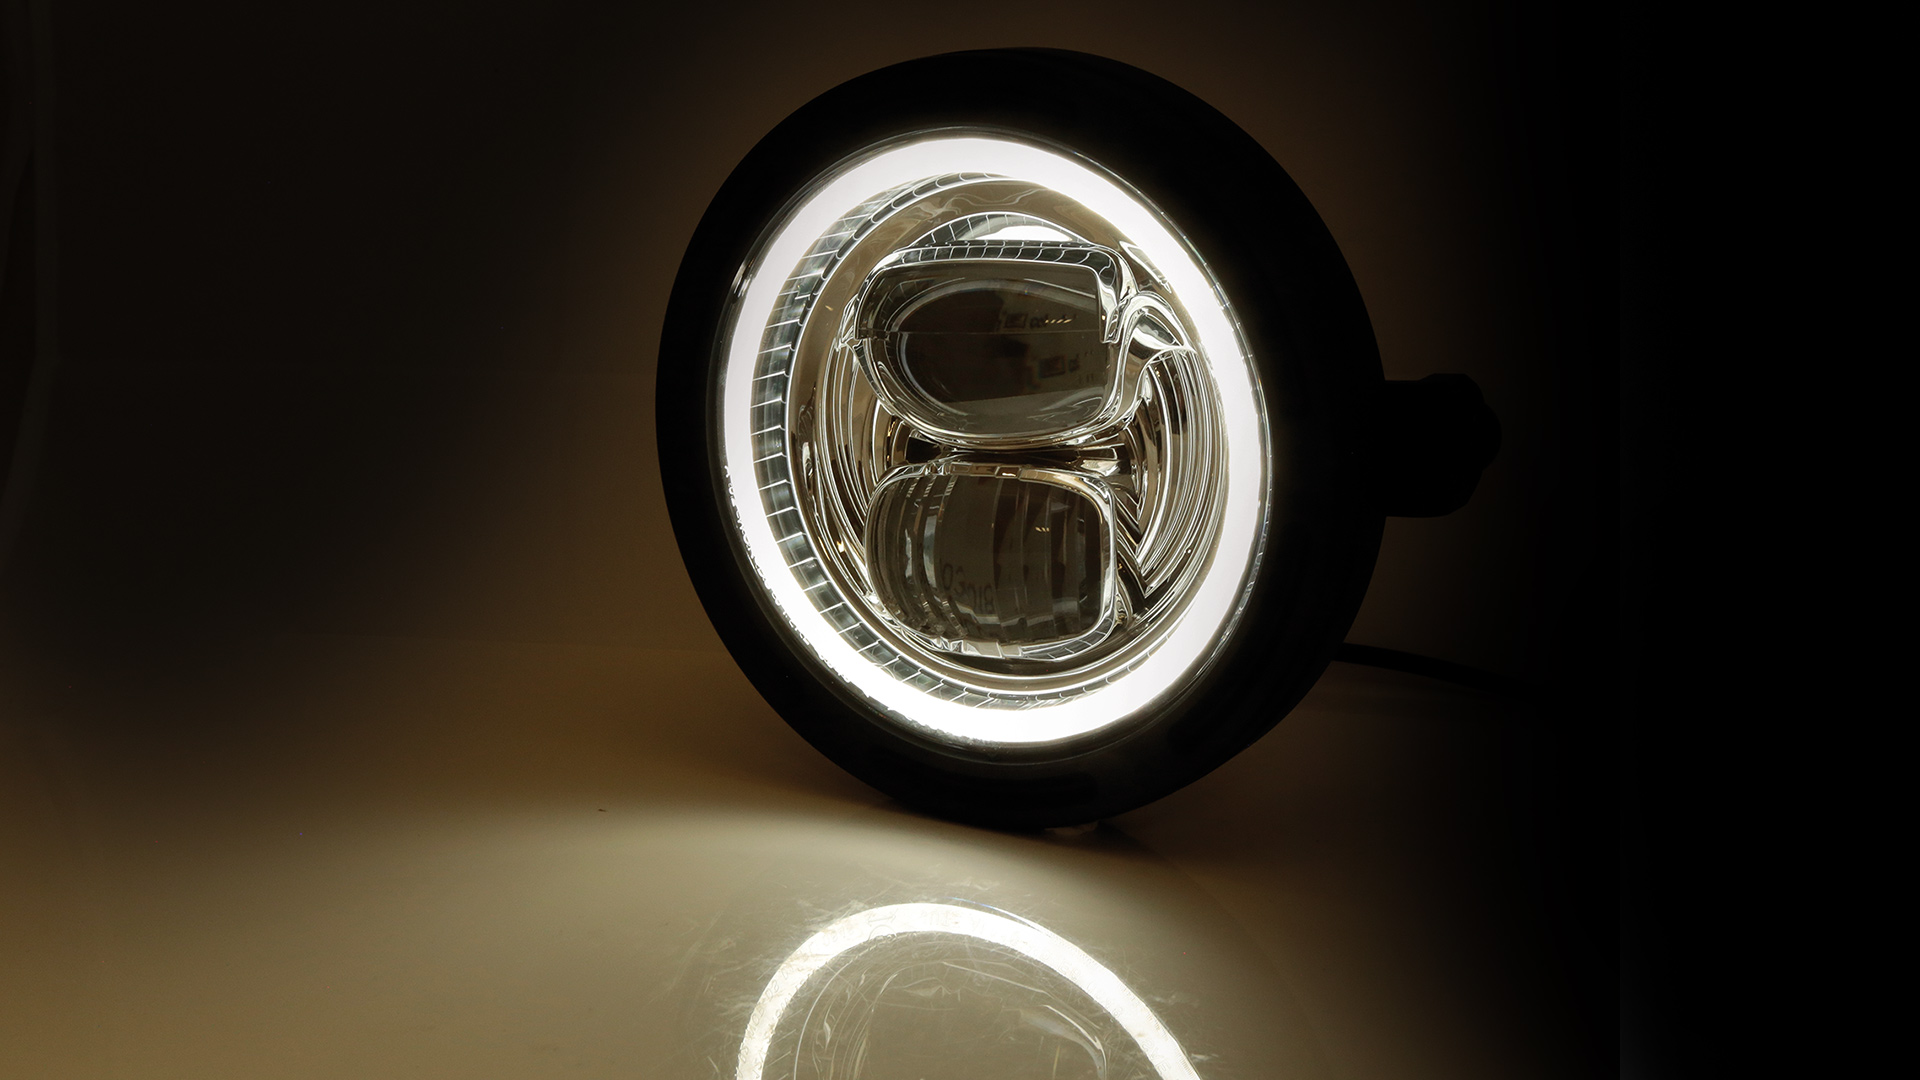 5 3/4 Zoll LED Hauptscheinwerfer FRAME-R2 TYP 7 mit Standlichtring, rund, schwarz. Erhältlich mit seitlicher und unterer Befestigung,  E-geprüft.